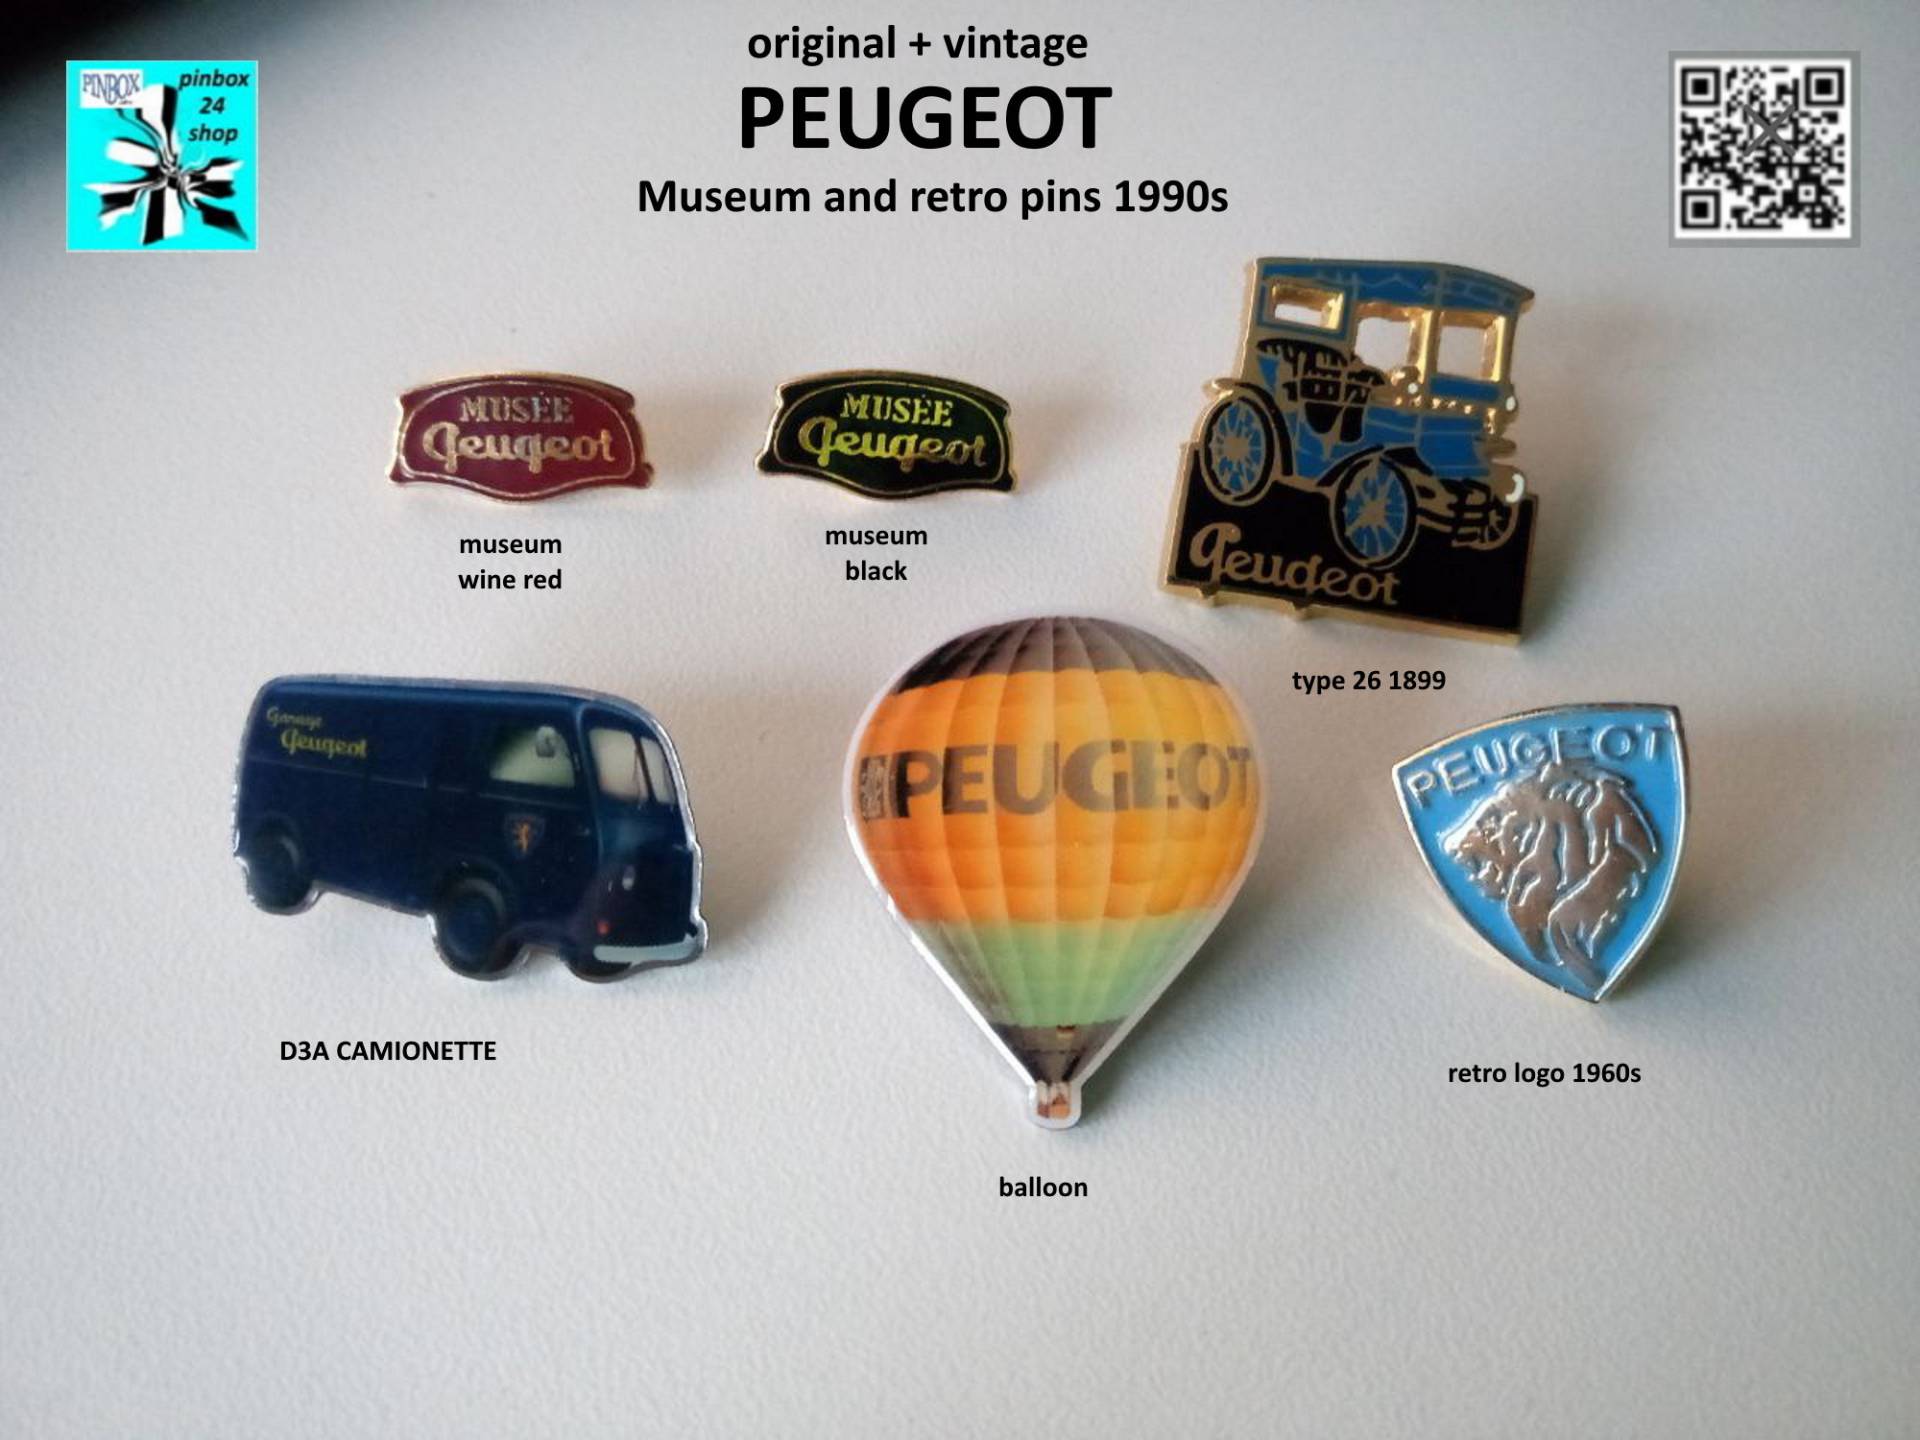 Peugeot Museum Und Retro Logo Pins 1990Er Jahre - Jetzt Aussuchen von pinbox24shop